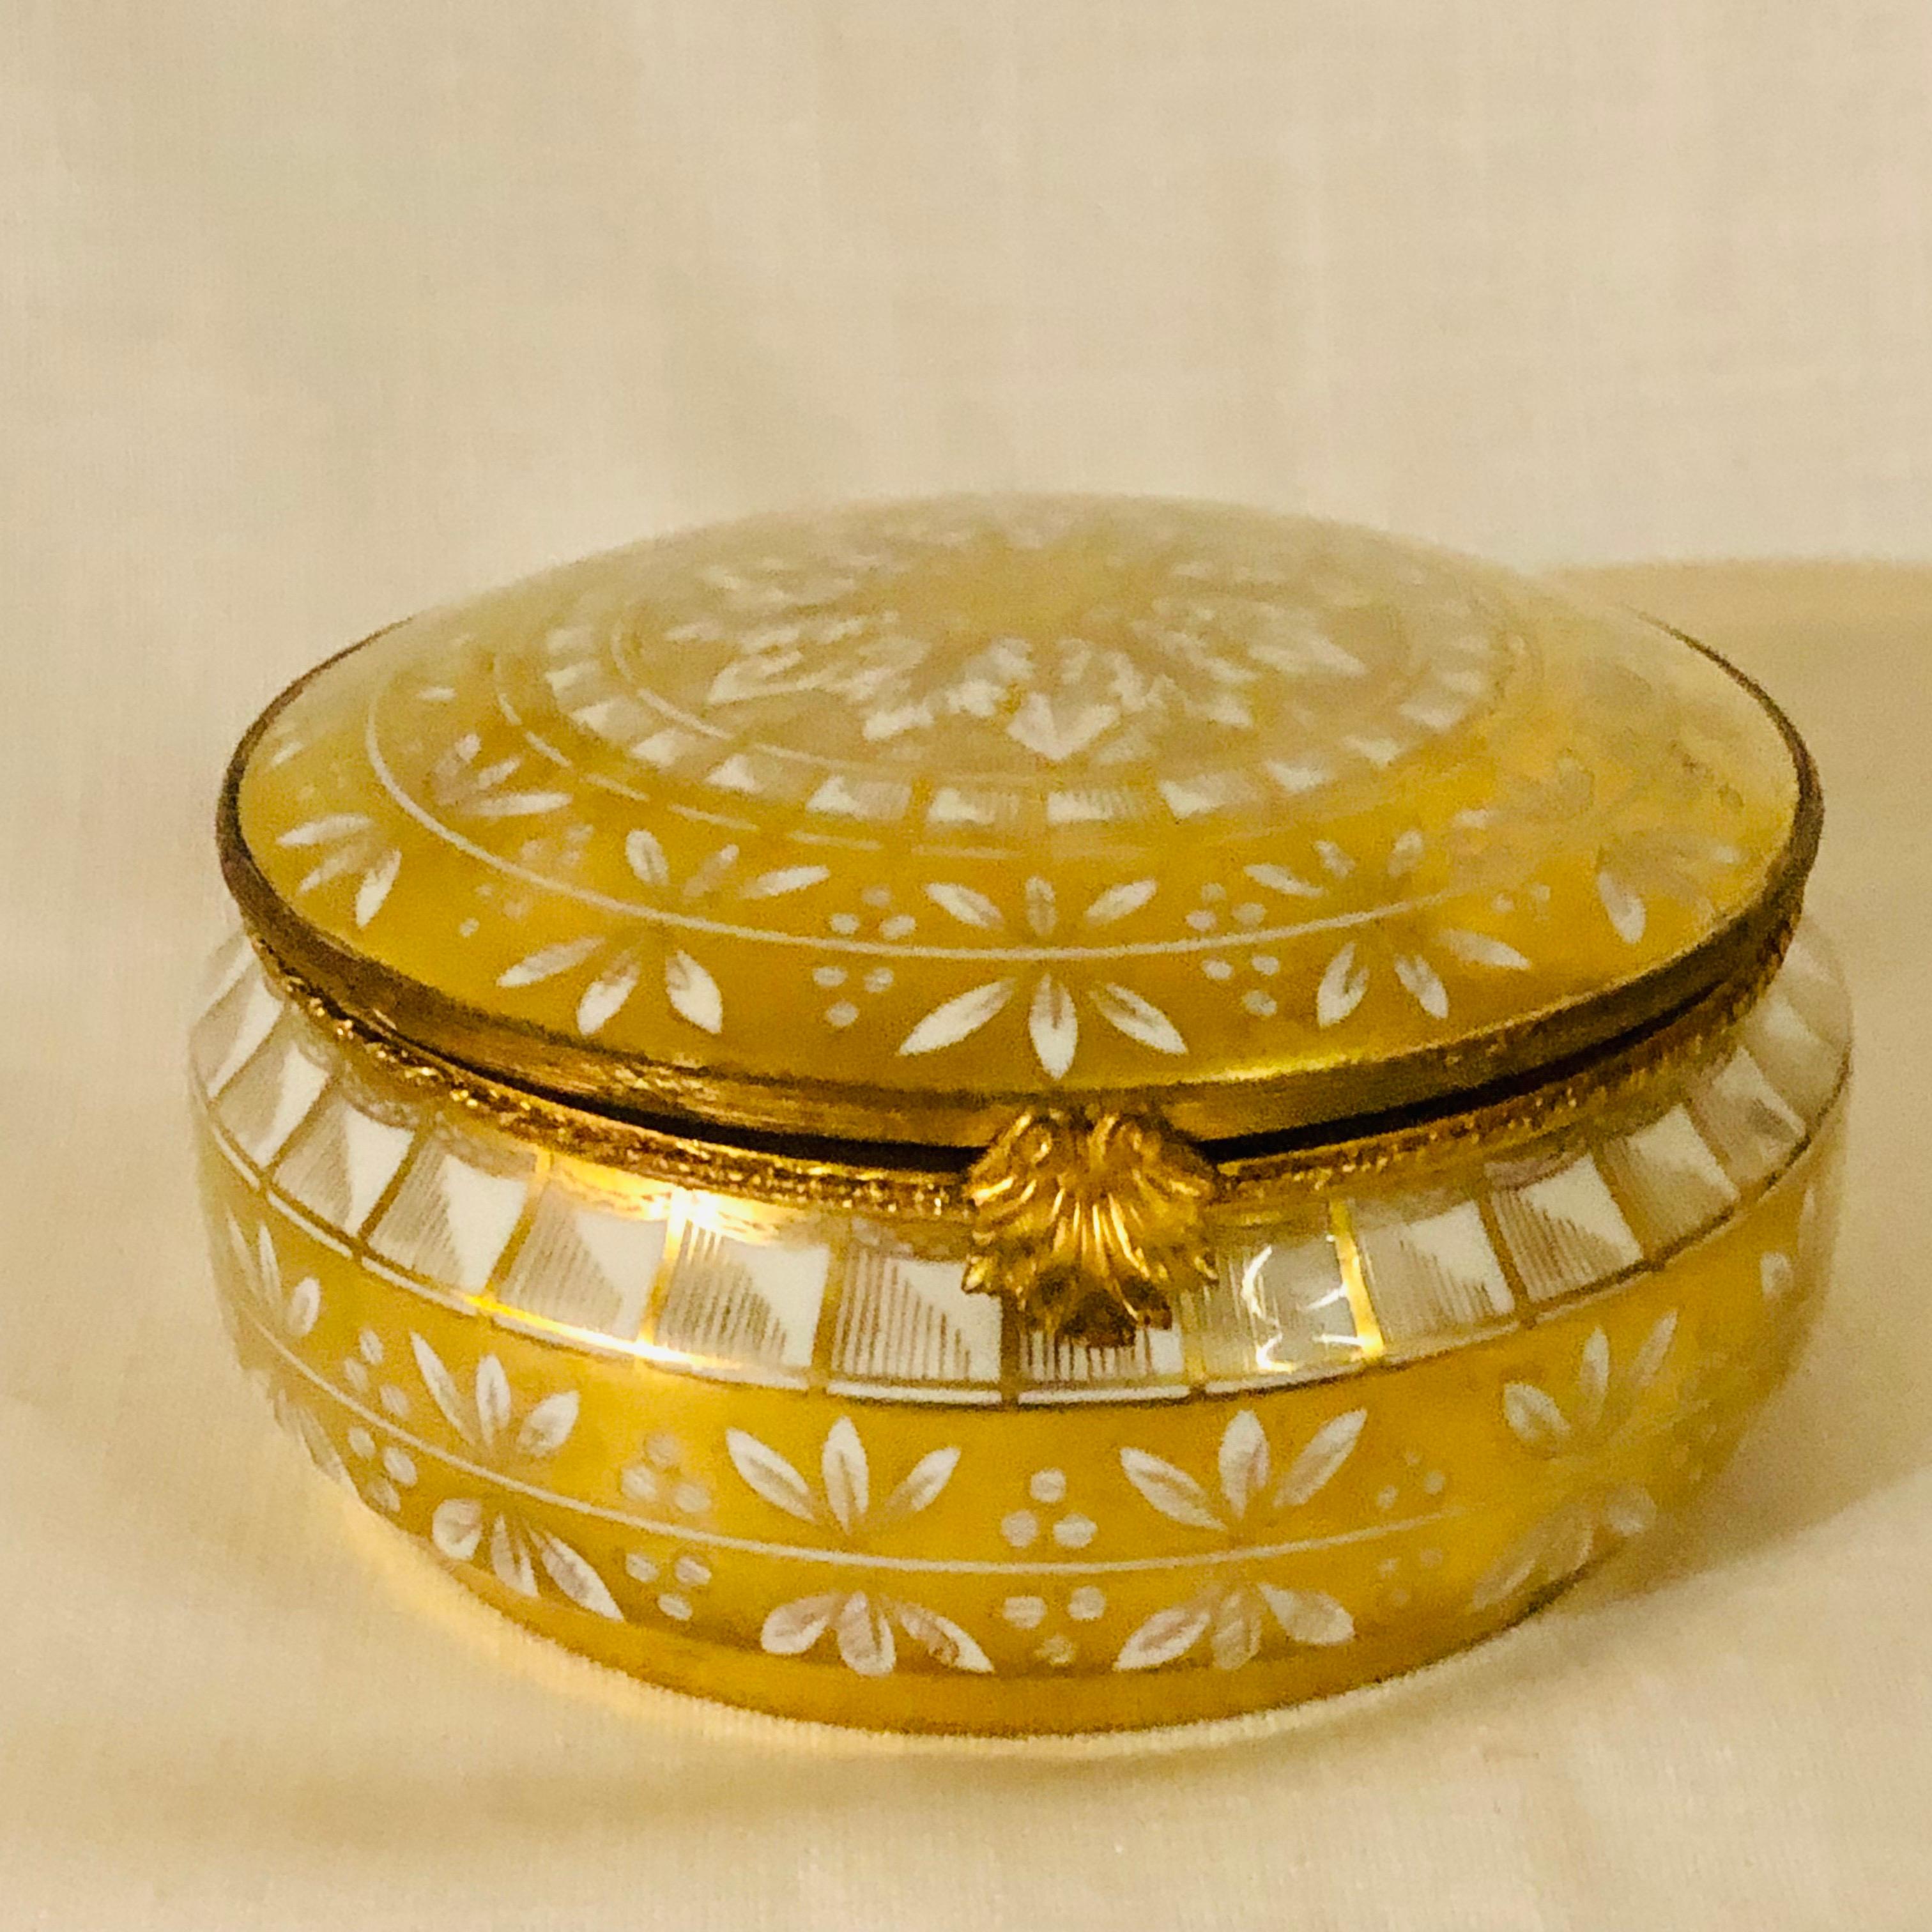 Rococo Boîte en porcelaine Le Tallec avec décoration peinte en or sur fond de porcelaine blanche